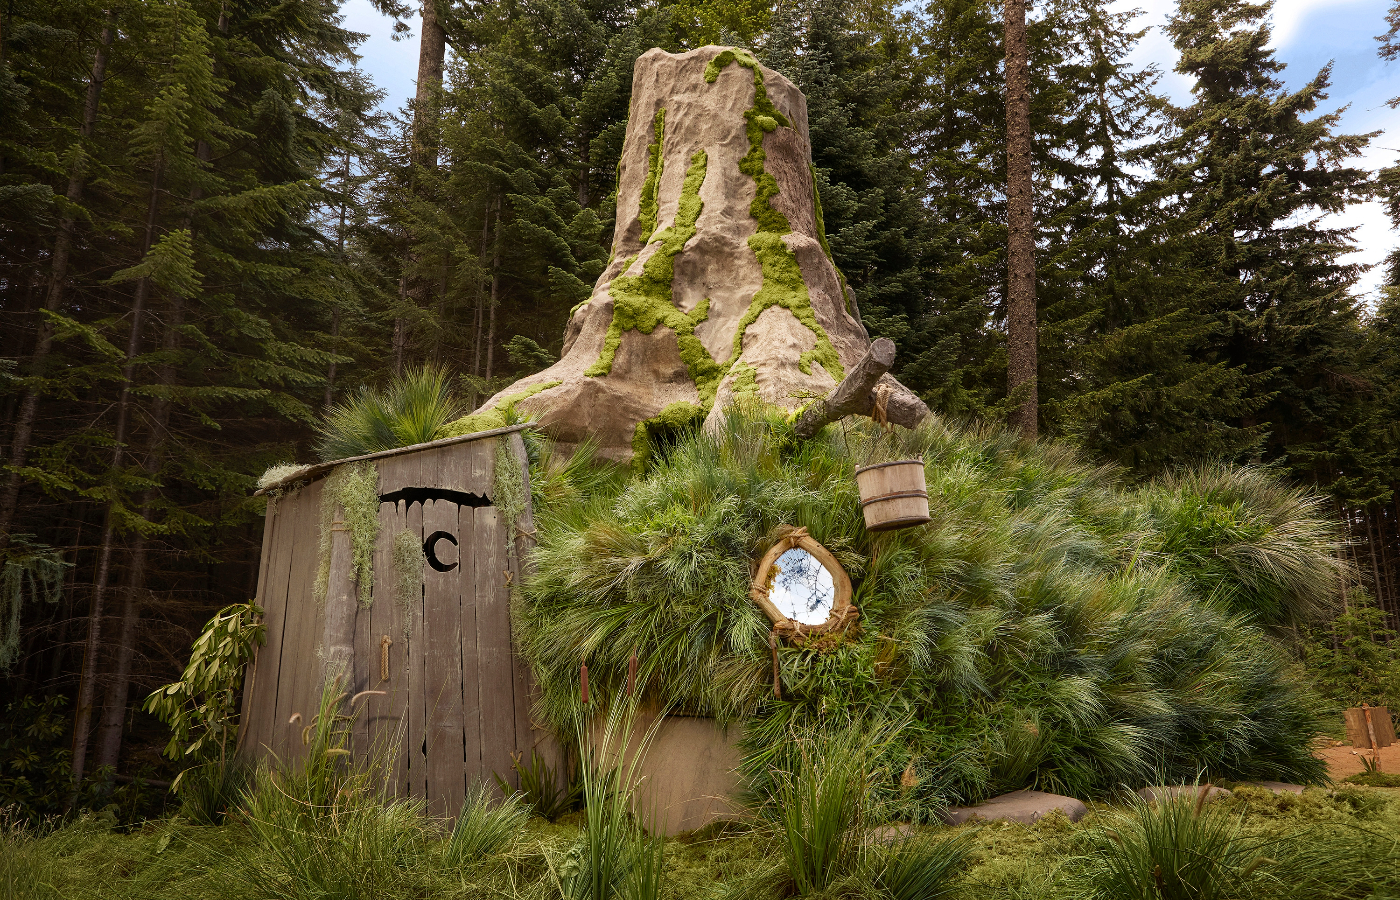 Shrek's iconic outhouse.